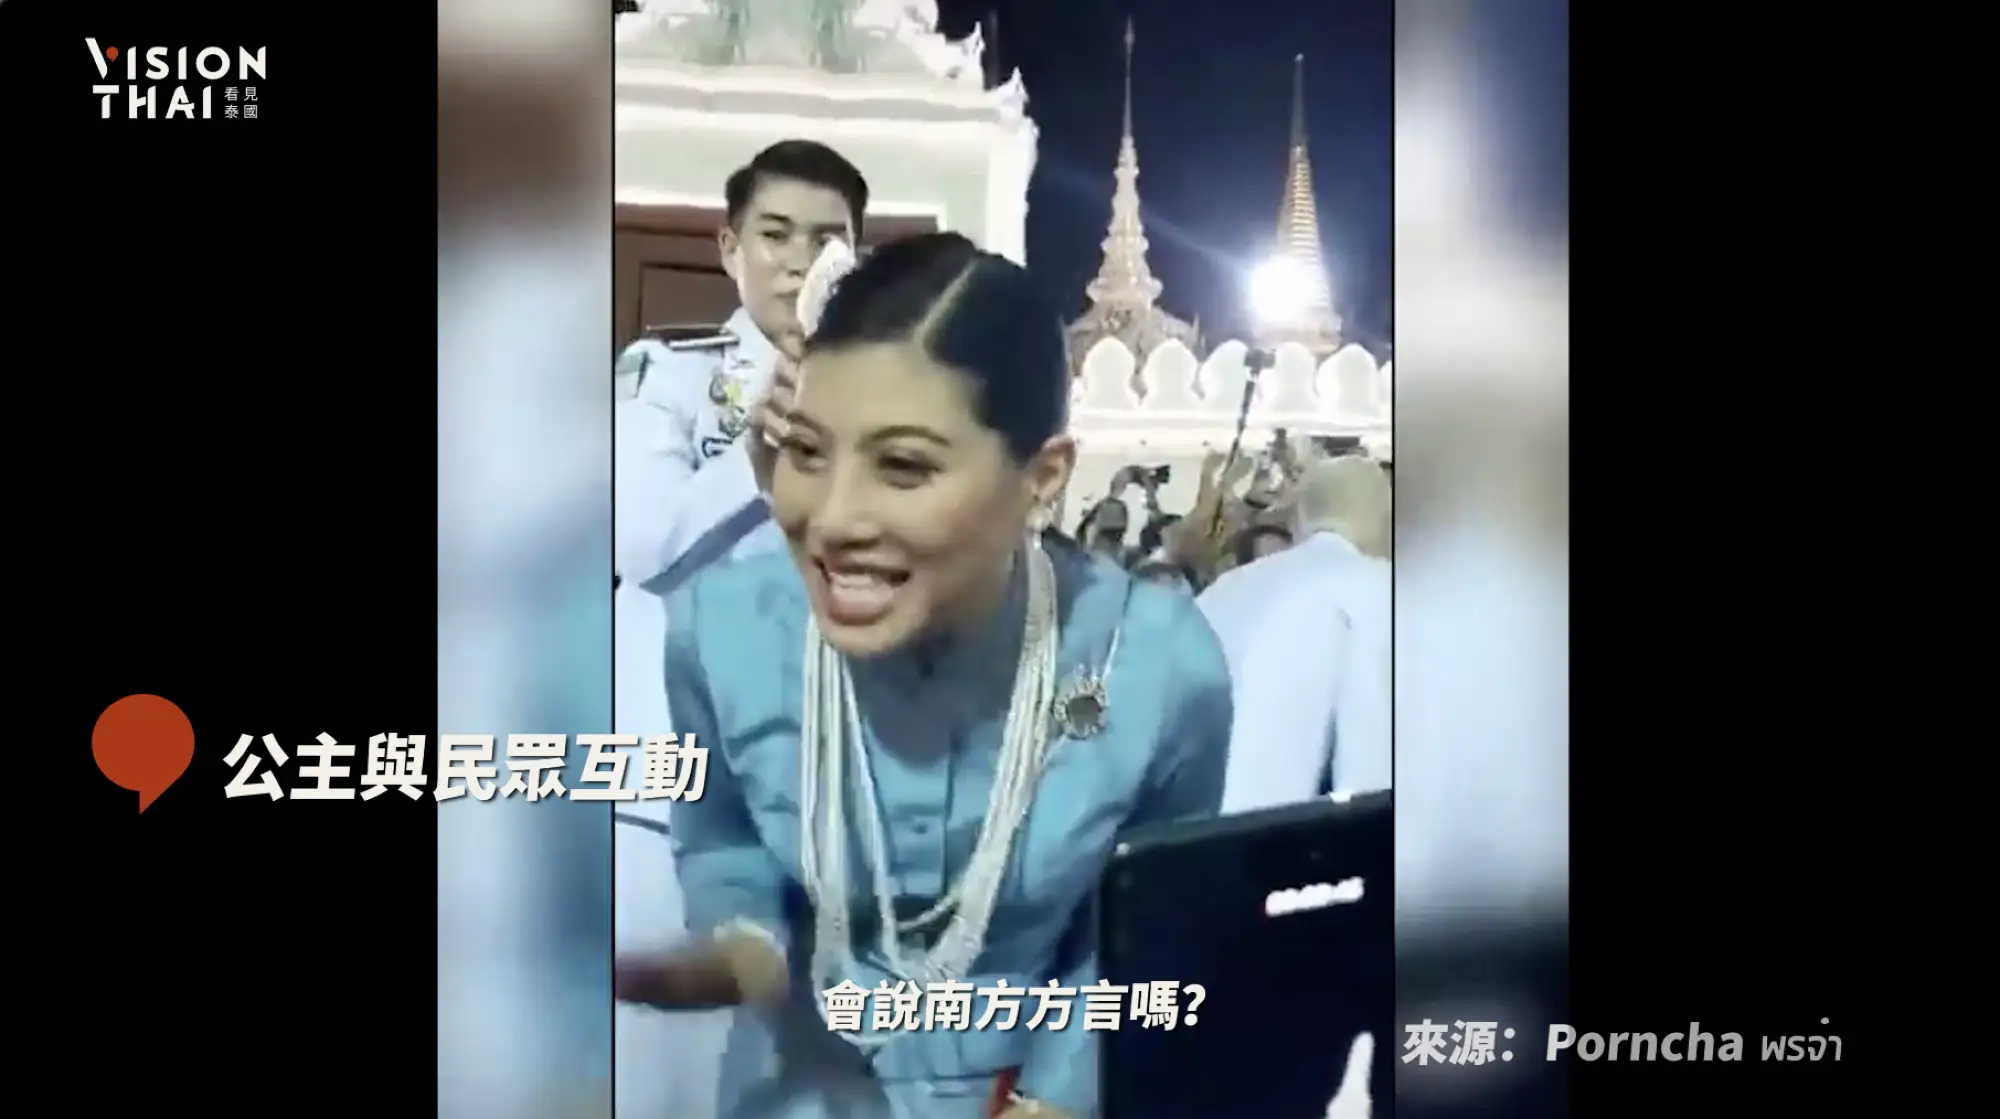 泰國公主與民眾大秀泰南方言（VISION THAI 影片截圖）